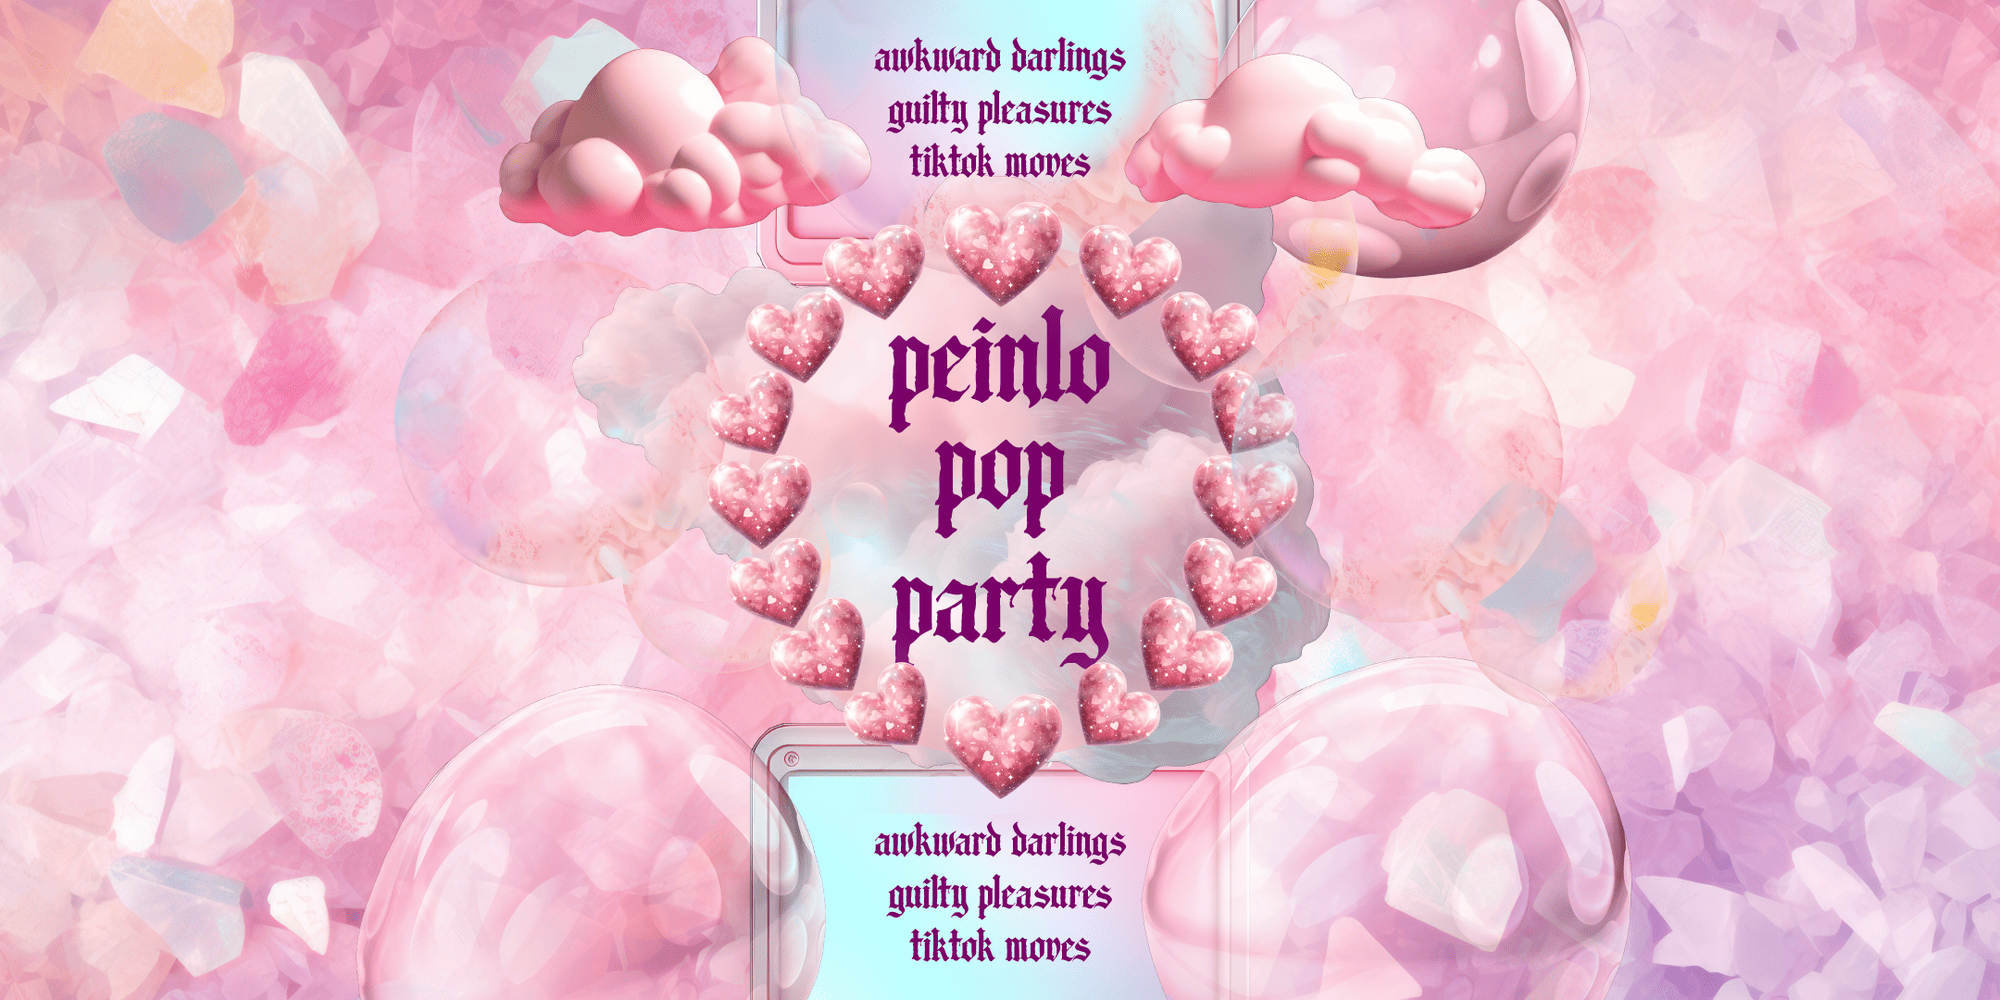 Peinlo Pop Party